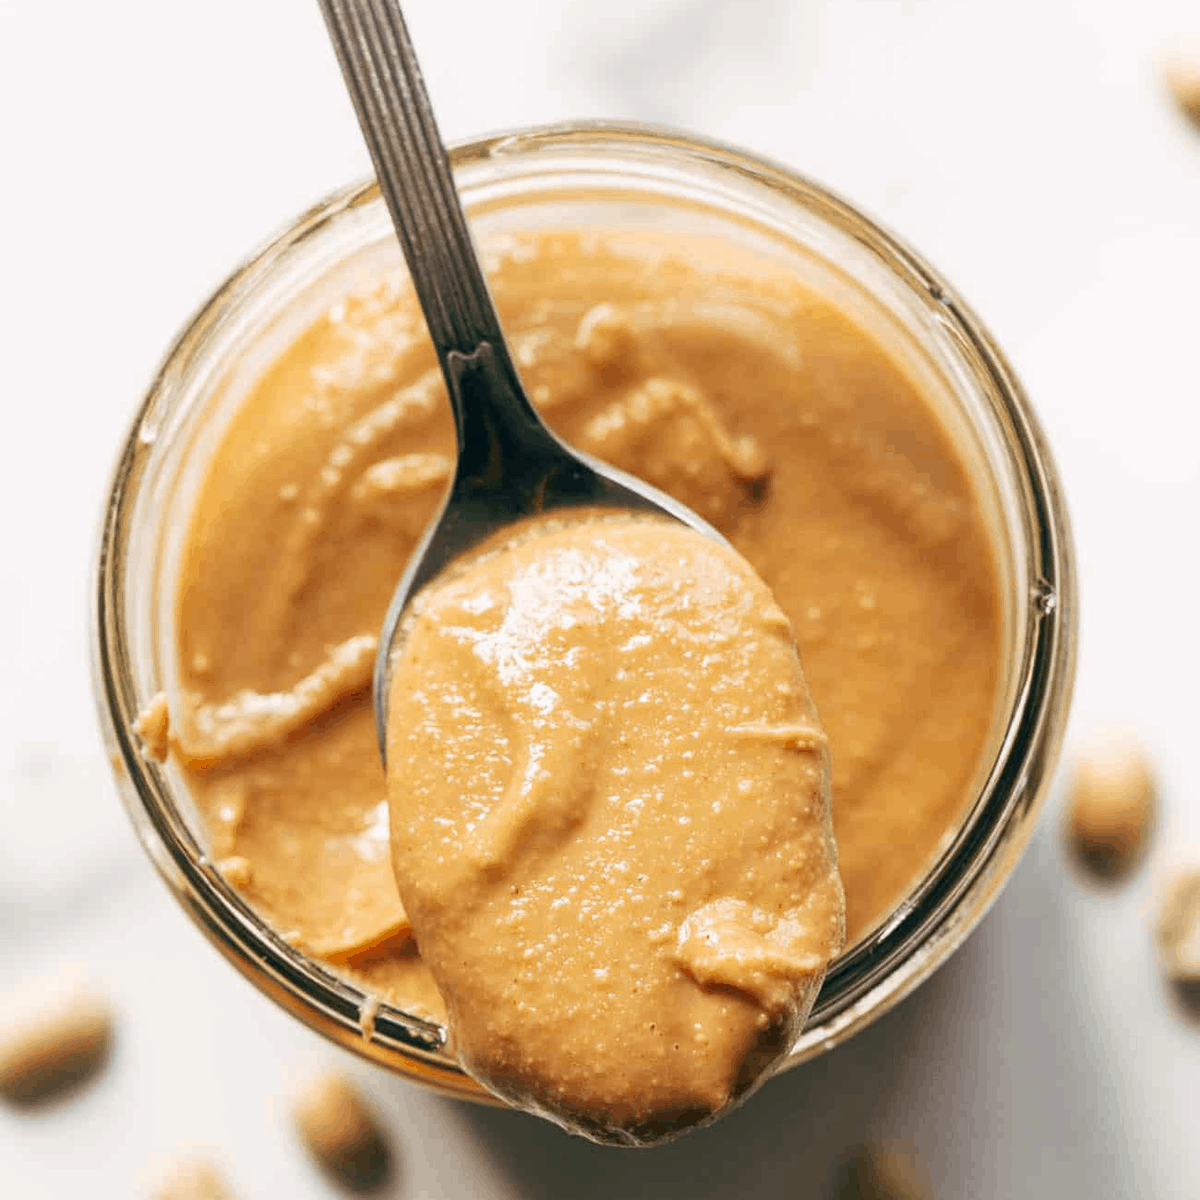 NaturaVia Peanut Butter - SUGAR FREE